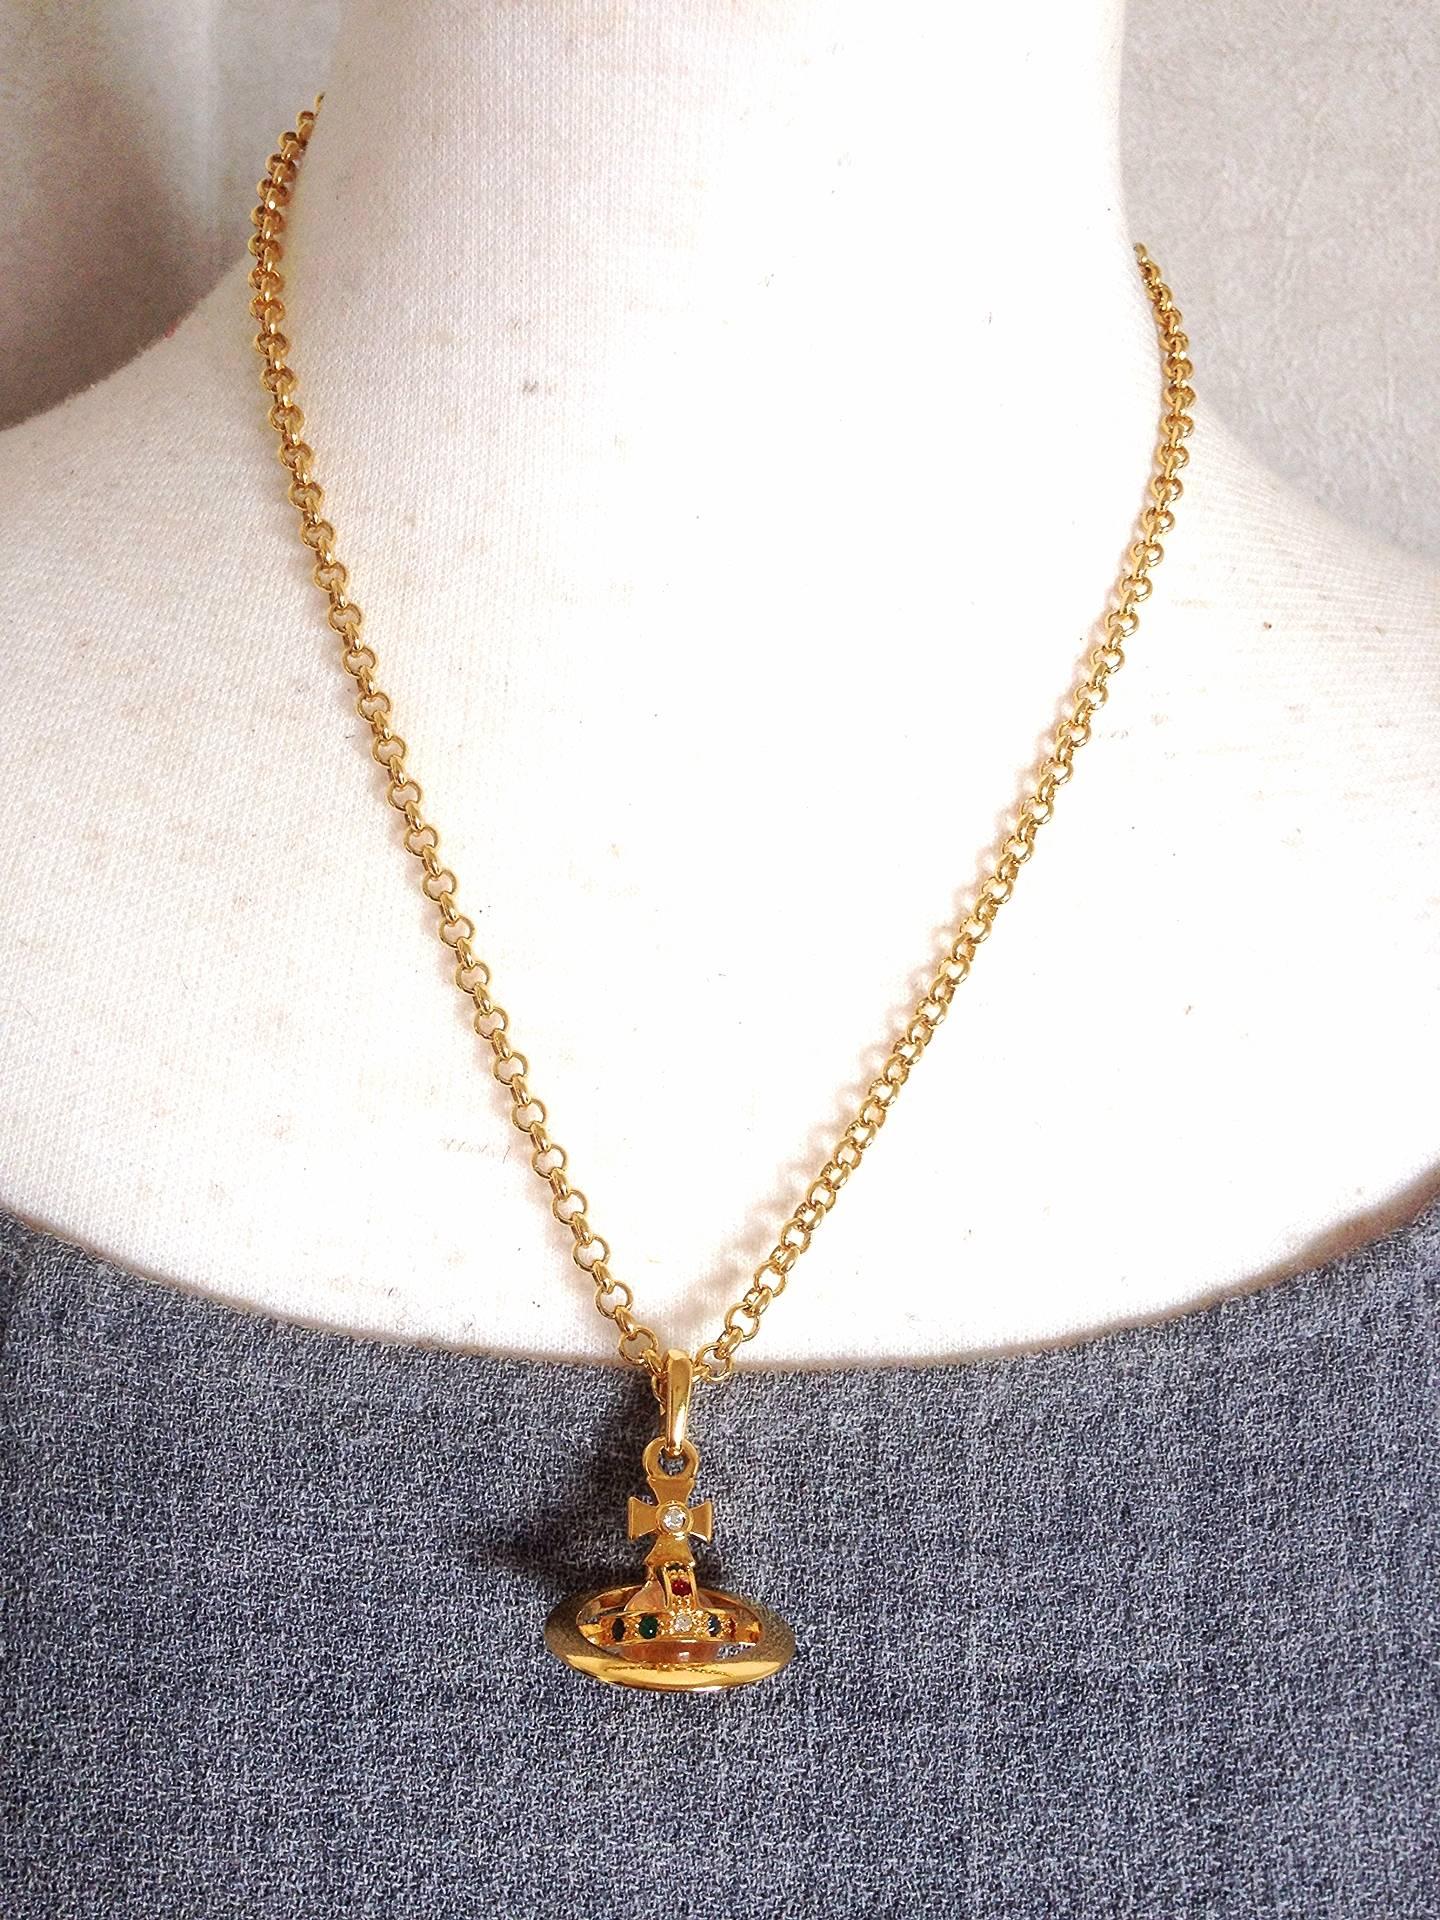 MINT. Vintage Vivienne Westwood classic crown shape golden chain necklace. 2